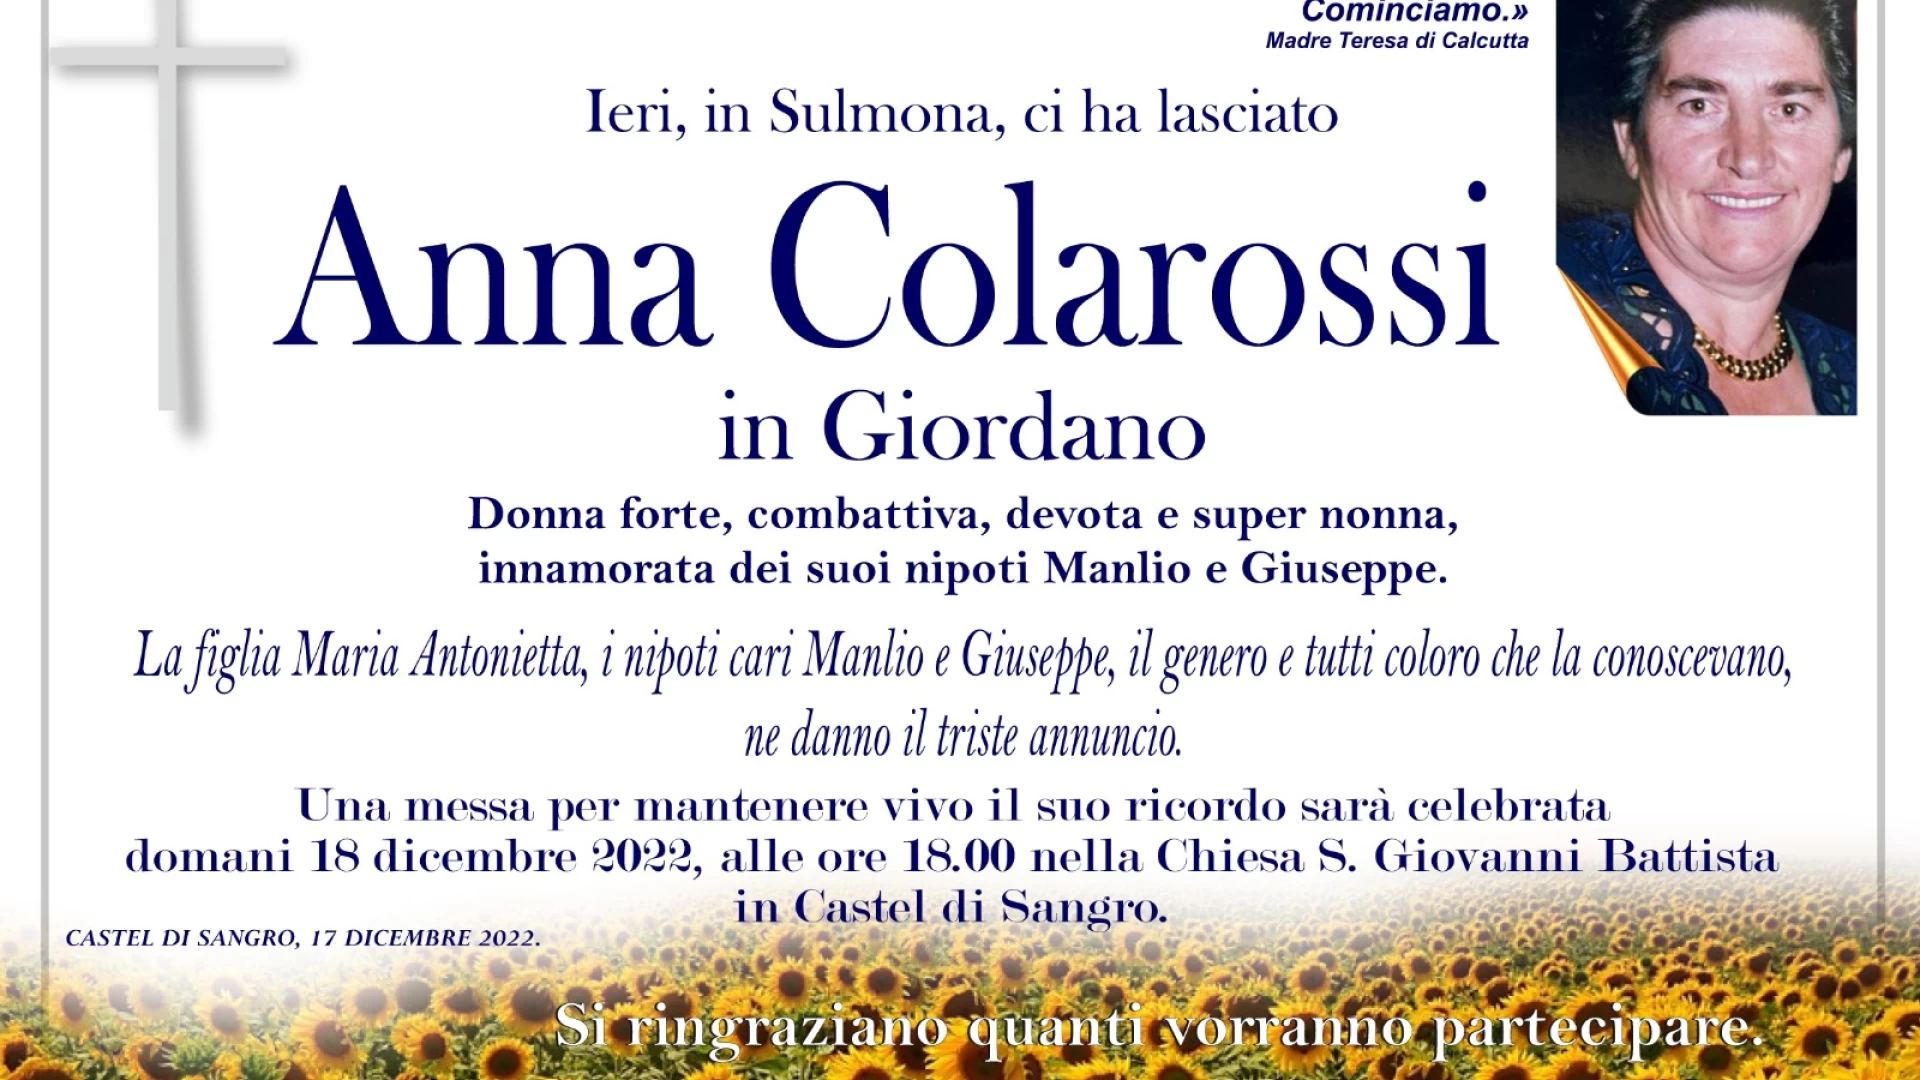 Anna Colarossi in Giordano non e' più. Nel pomeriggio una messa in suffragio a Castel Di Sangro. Le condoglianze alla famiglia della nostra redazione.